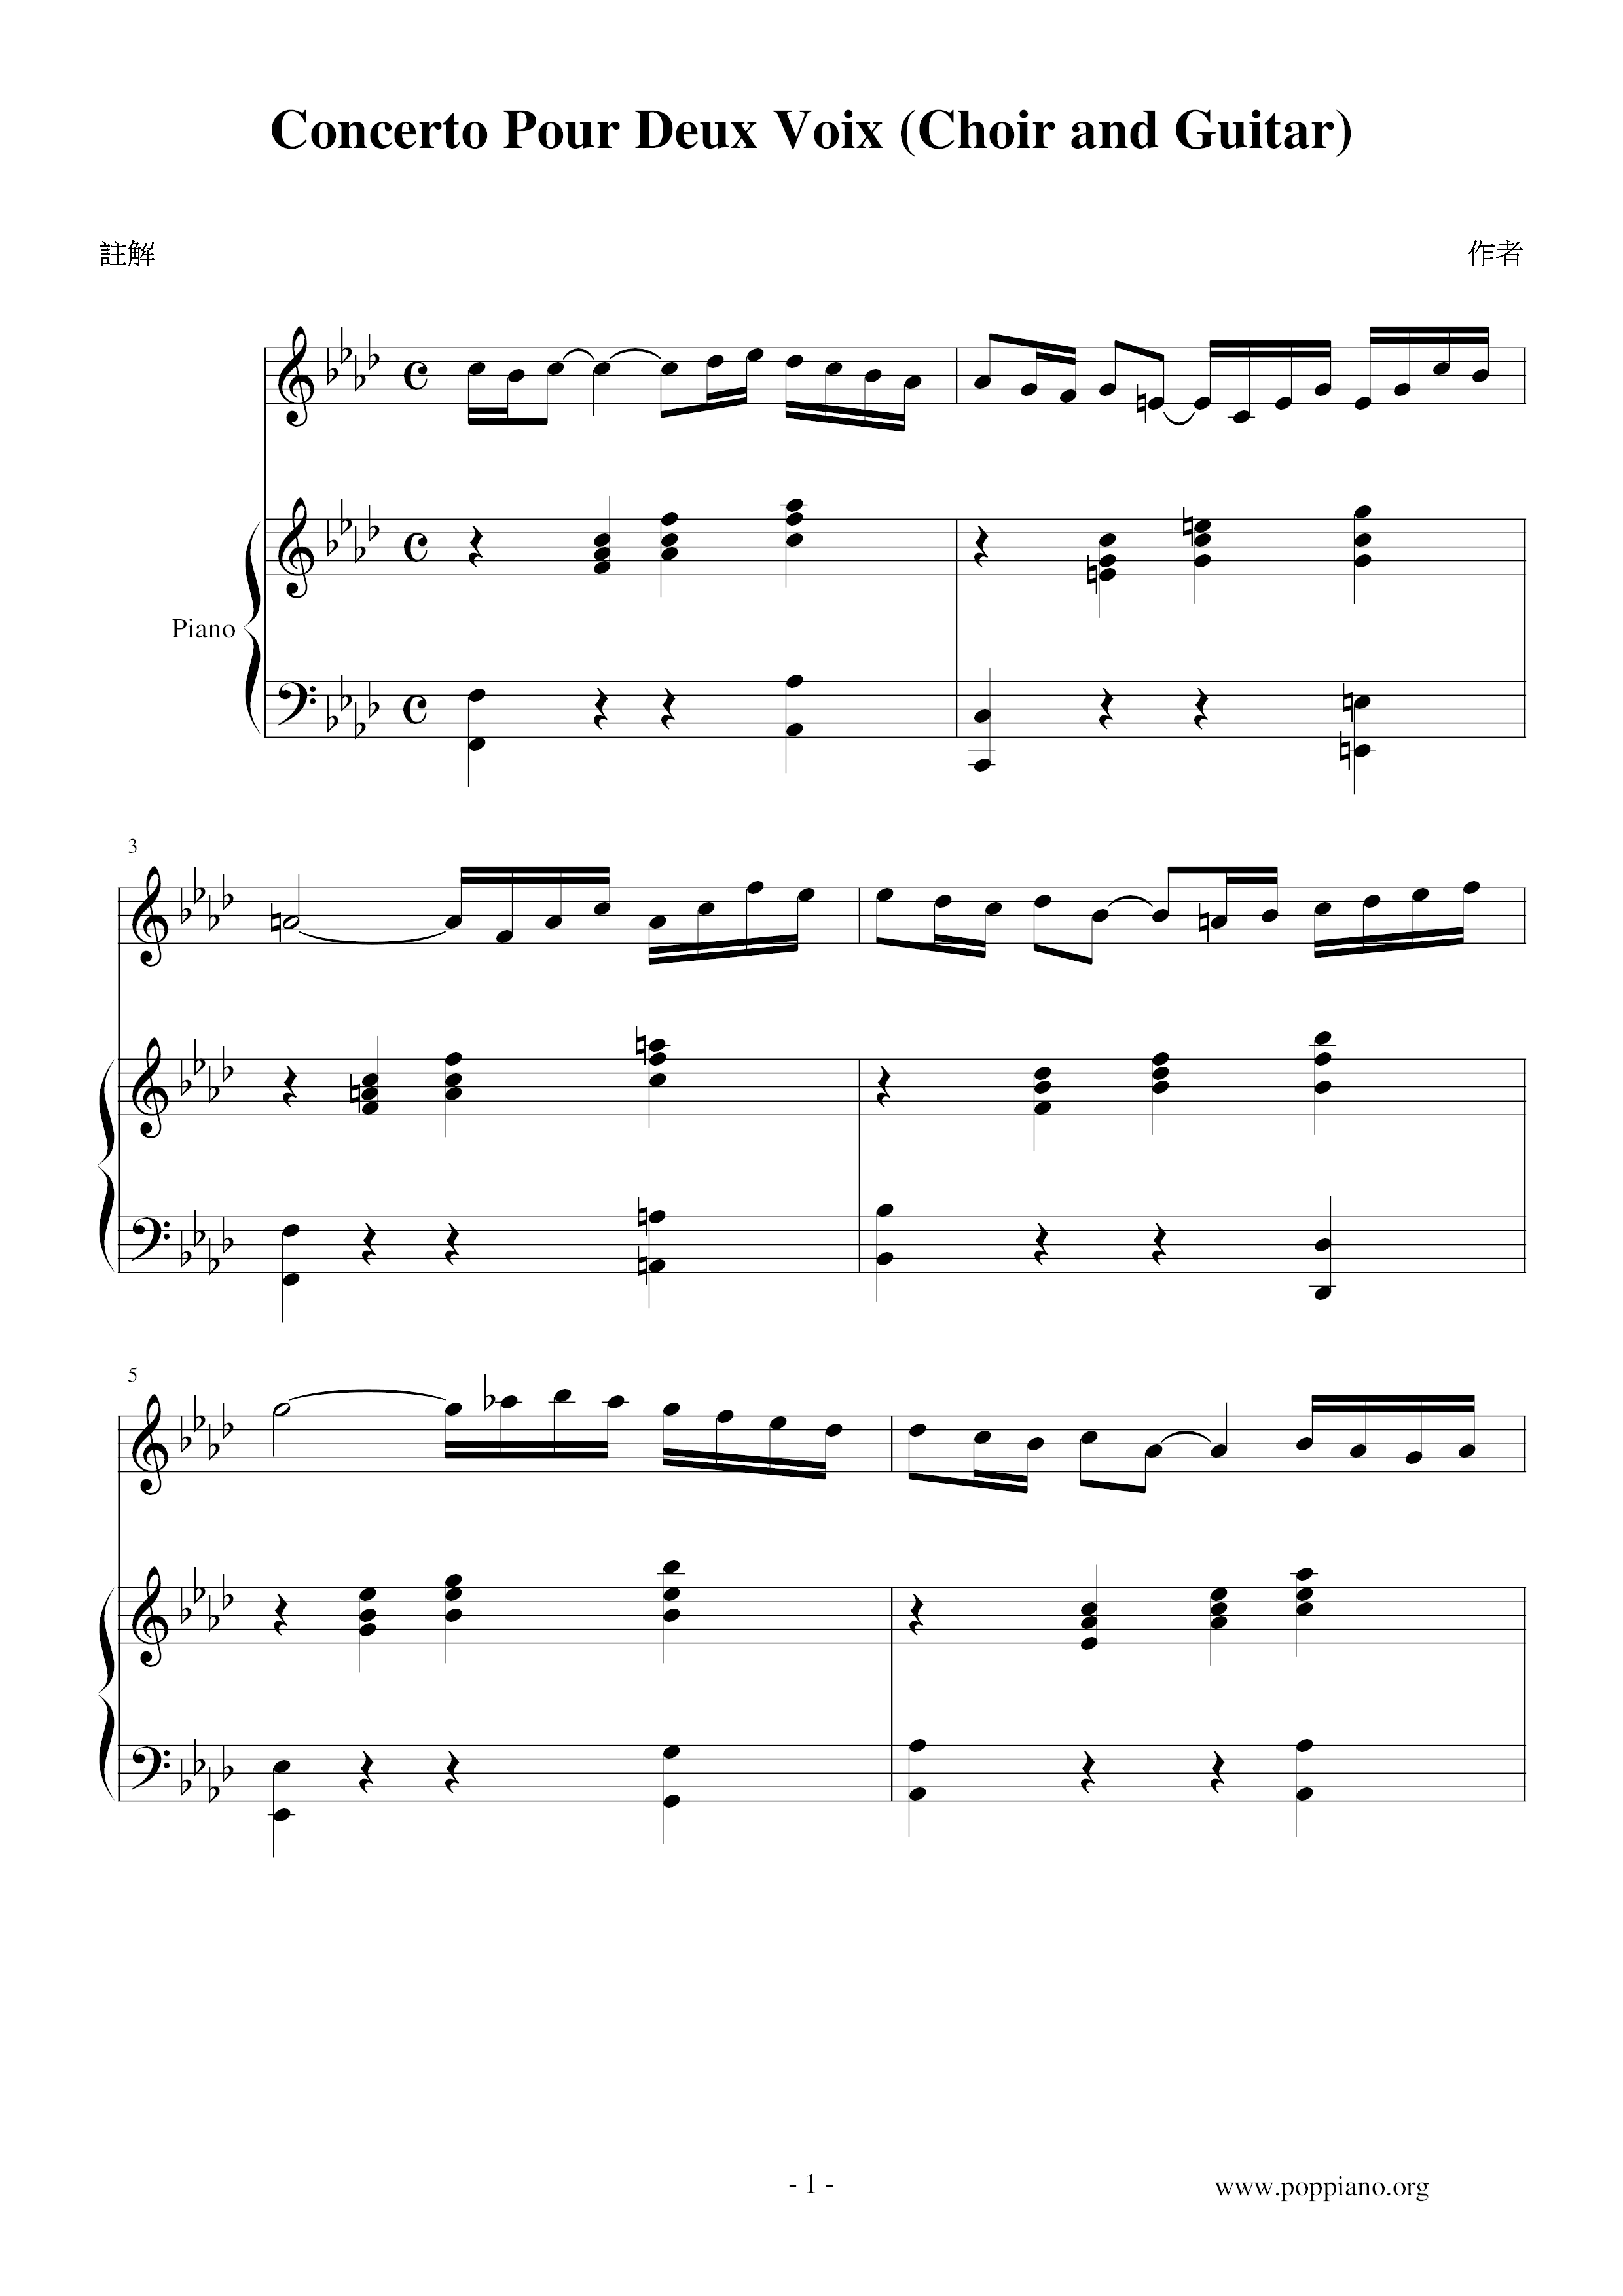 Concerto Pour Deux Voix (Choir and Guitar) Score